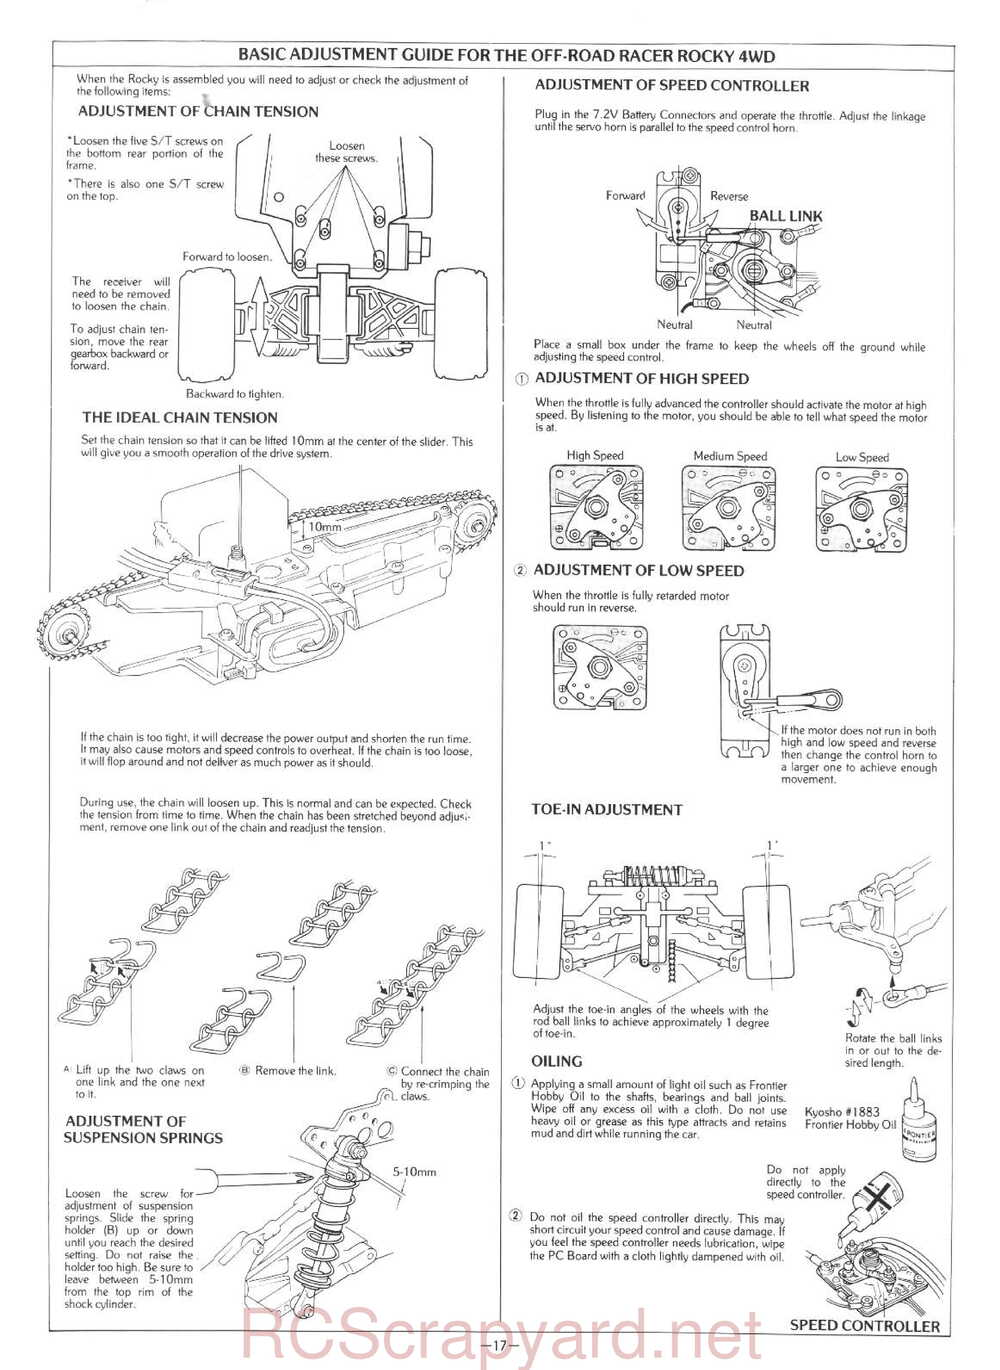 Kyosho - 3101 - Rocky - Manual - Page 17